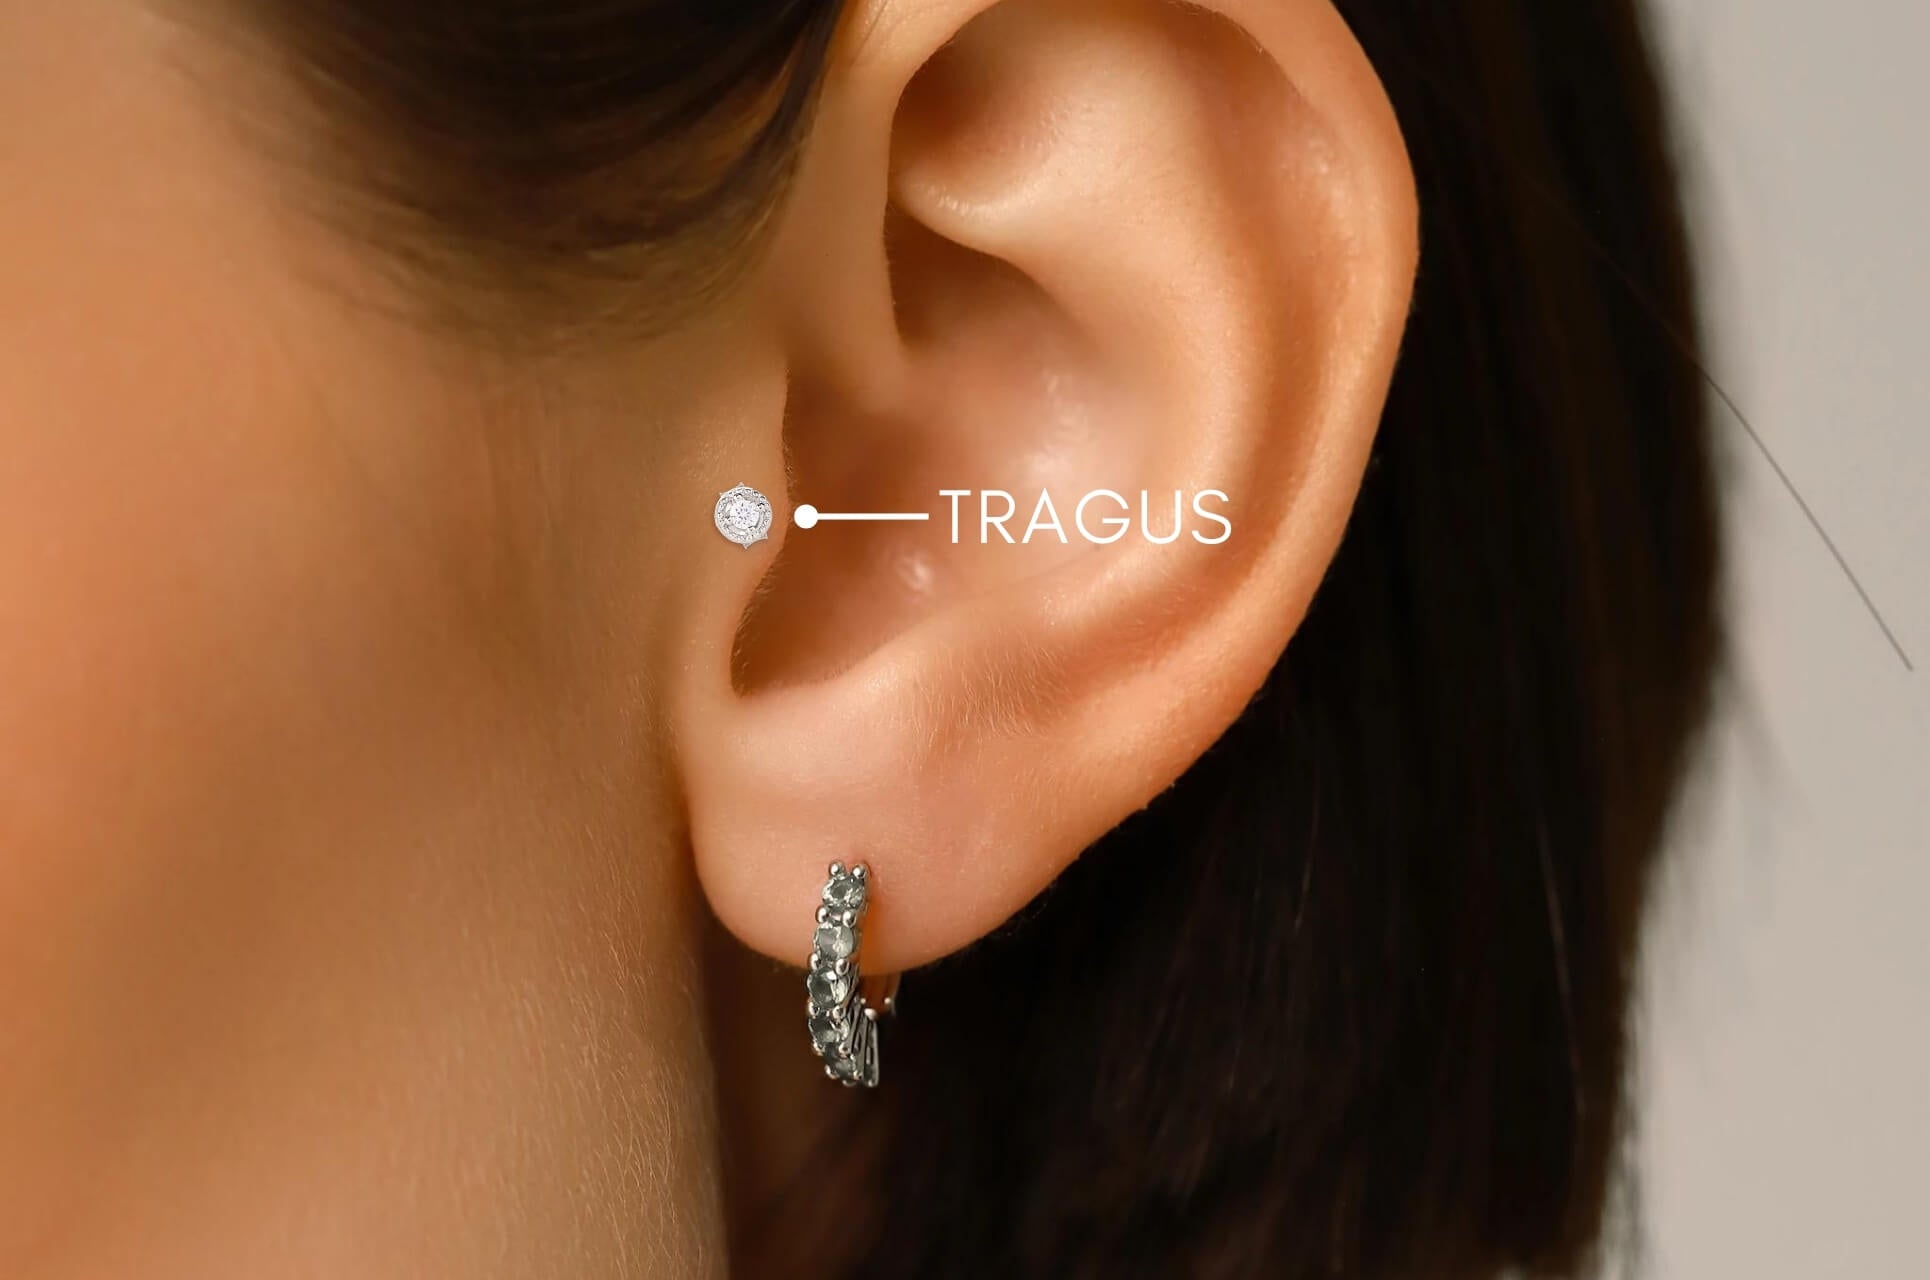 Piercing Tragus : Douleur, Cicatrisation, Bijoux - Obsidian Piercing